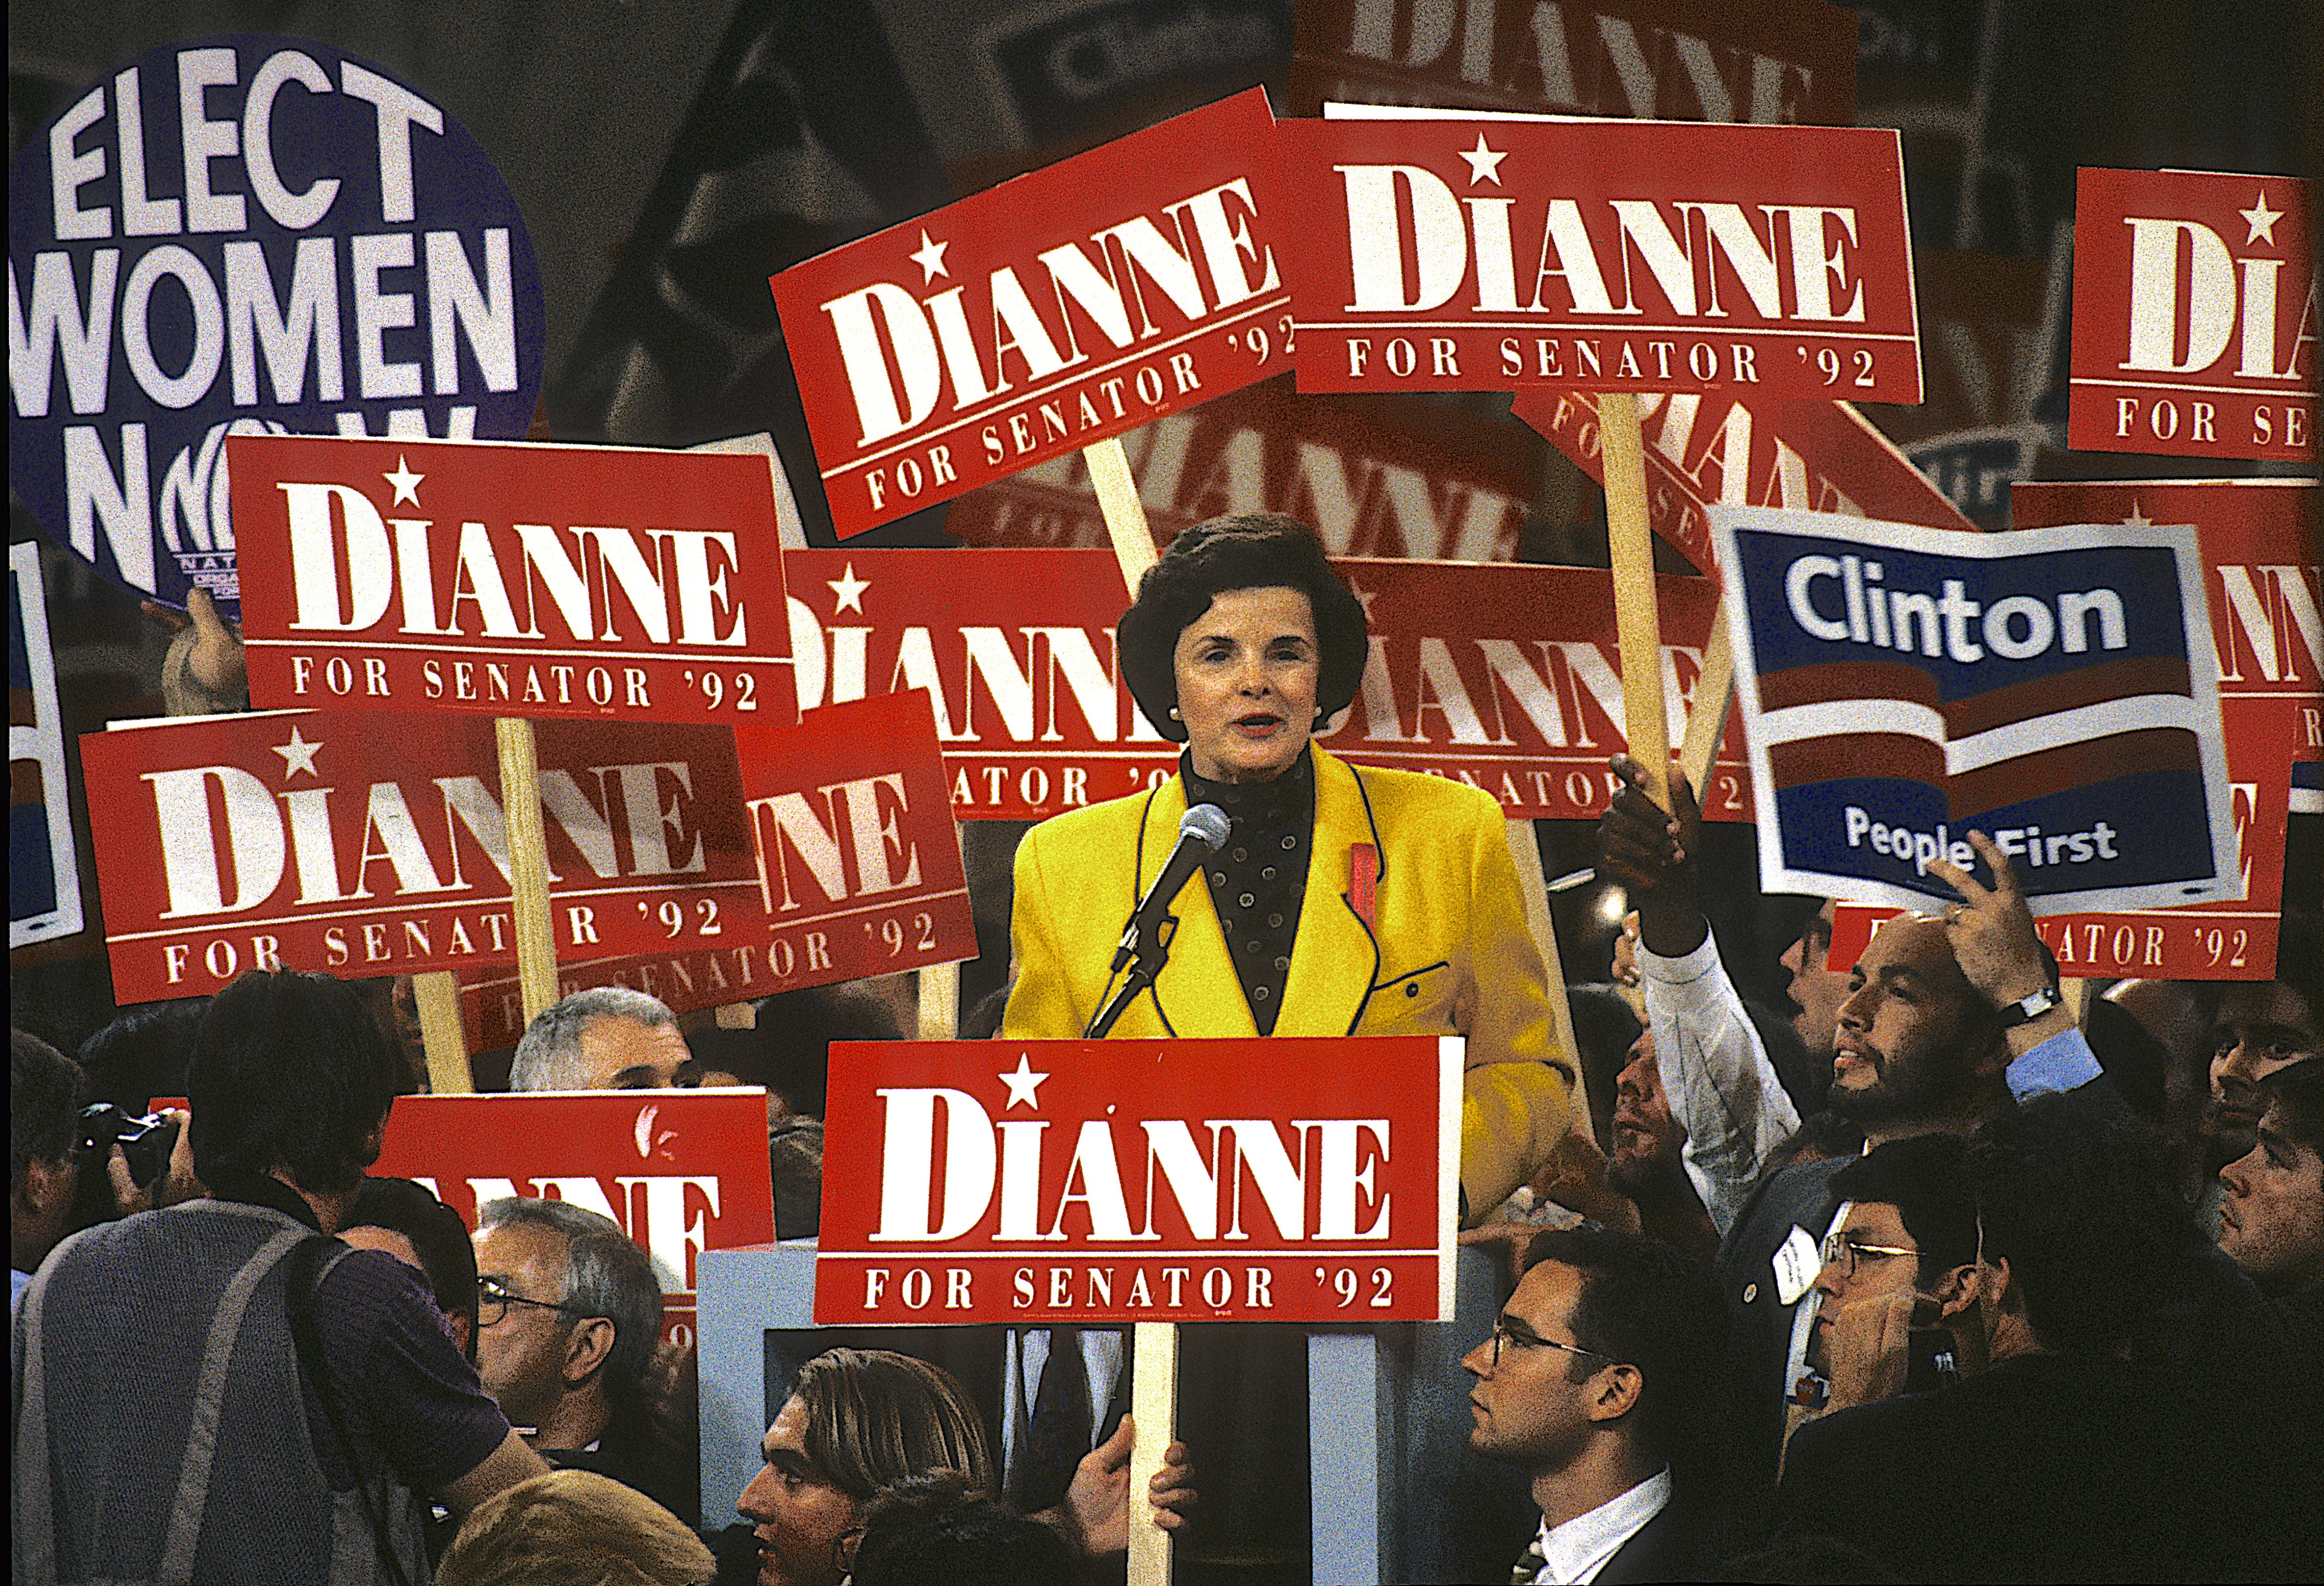 Dianne Feinstein, Democratic National Convention 1992